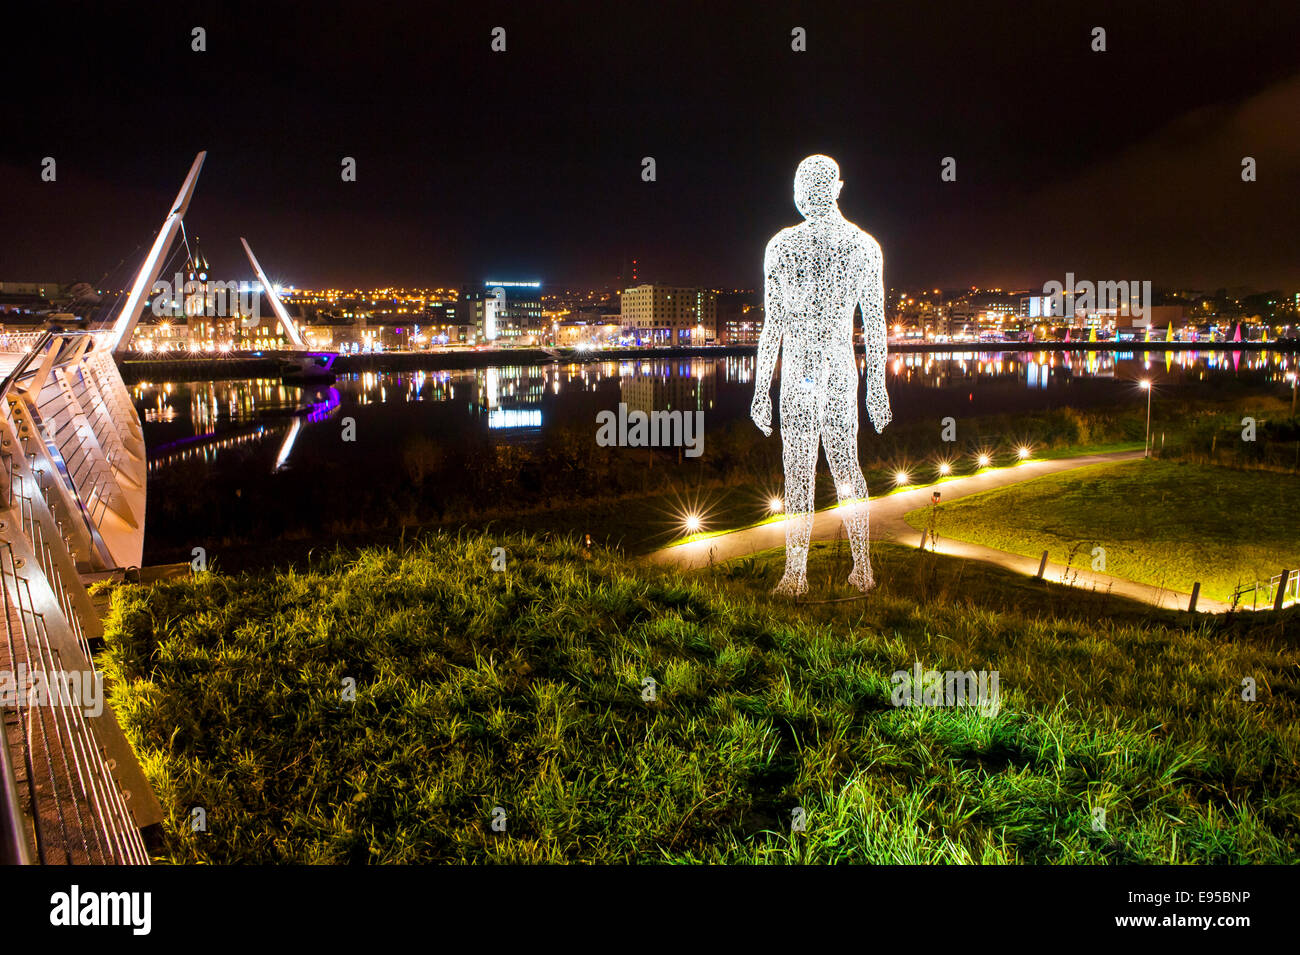 Lumiere, Derry, 2013 Londonderry, Nordirland, der Reisende, Cedric le Borgne, Derry Stadt, Fluss Foyle Stockfoto